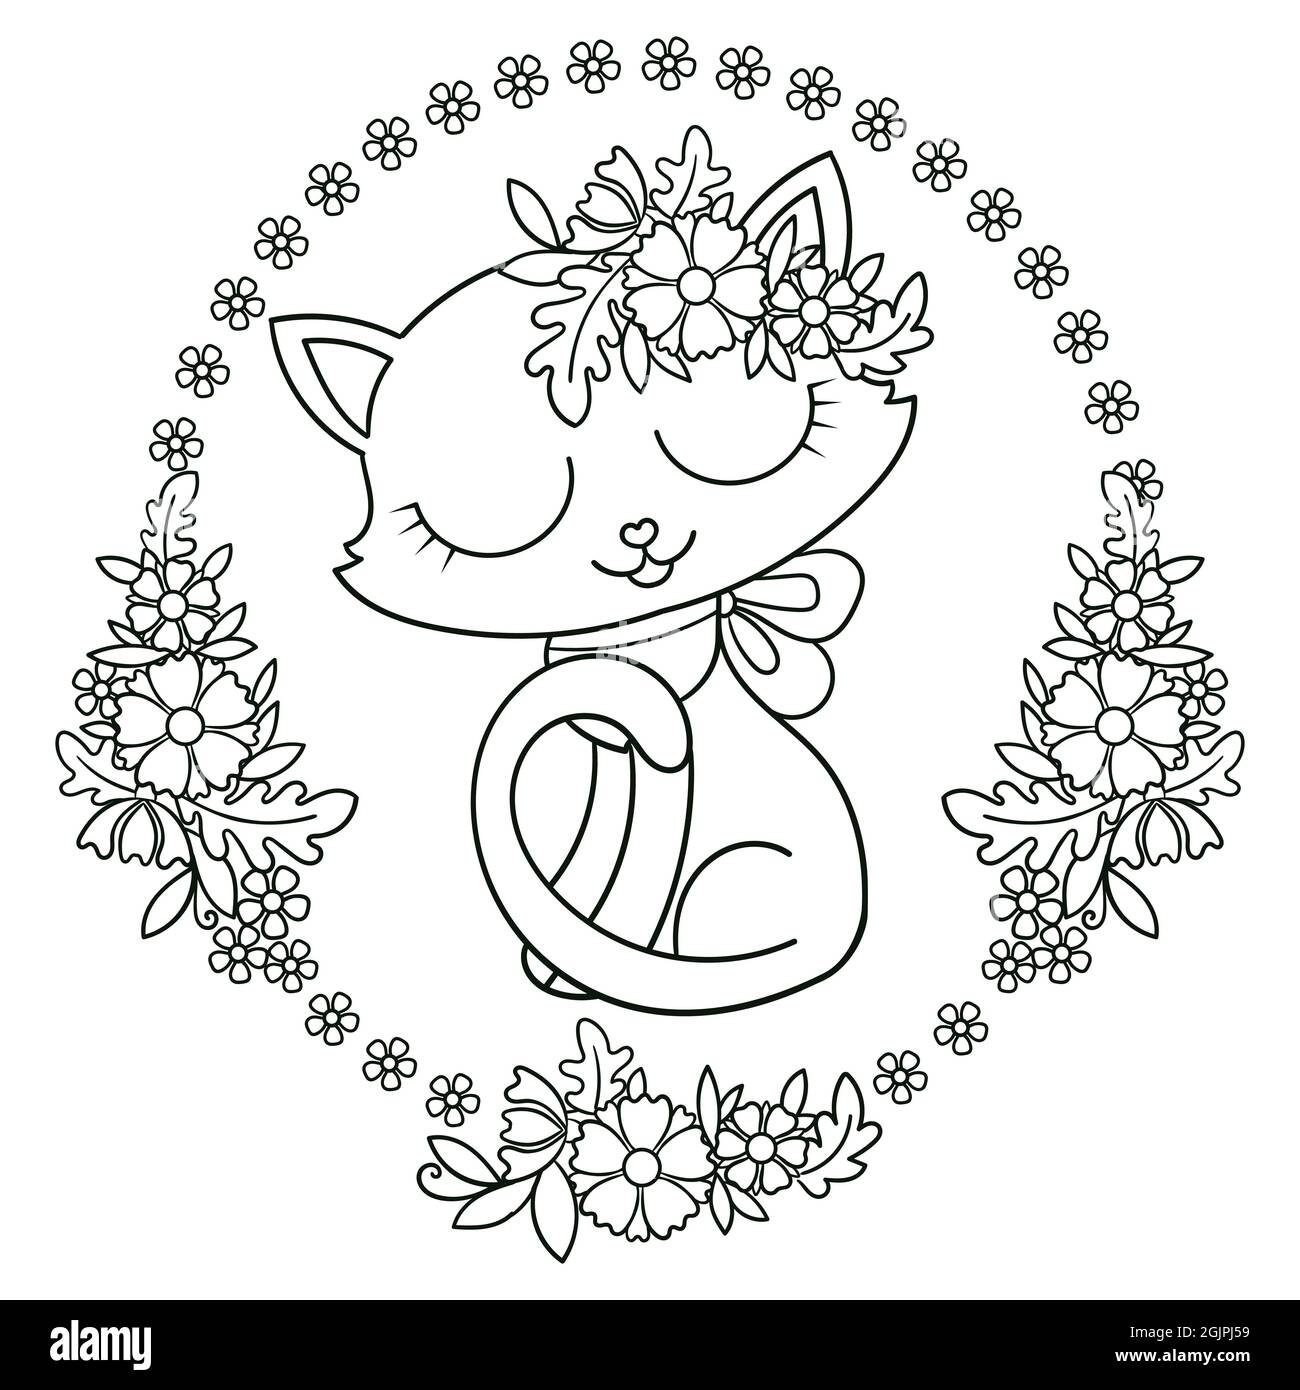 Joli chaton de dessin animé dans un cadre ovale de fleurs.Image linéaire noir et blanc.Vecteur Illustration de Vecteur